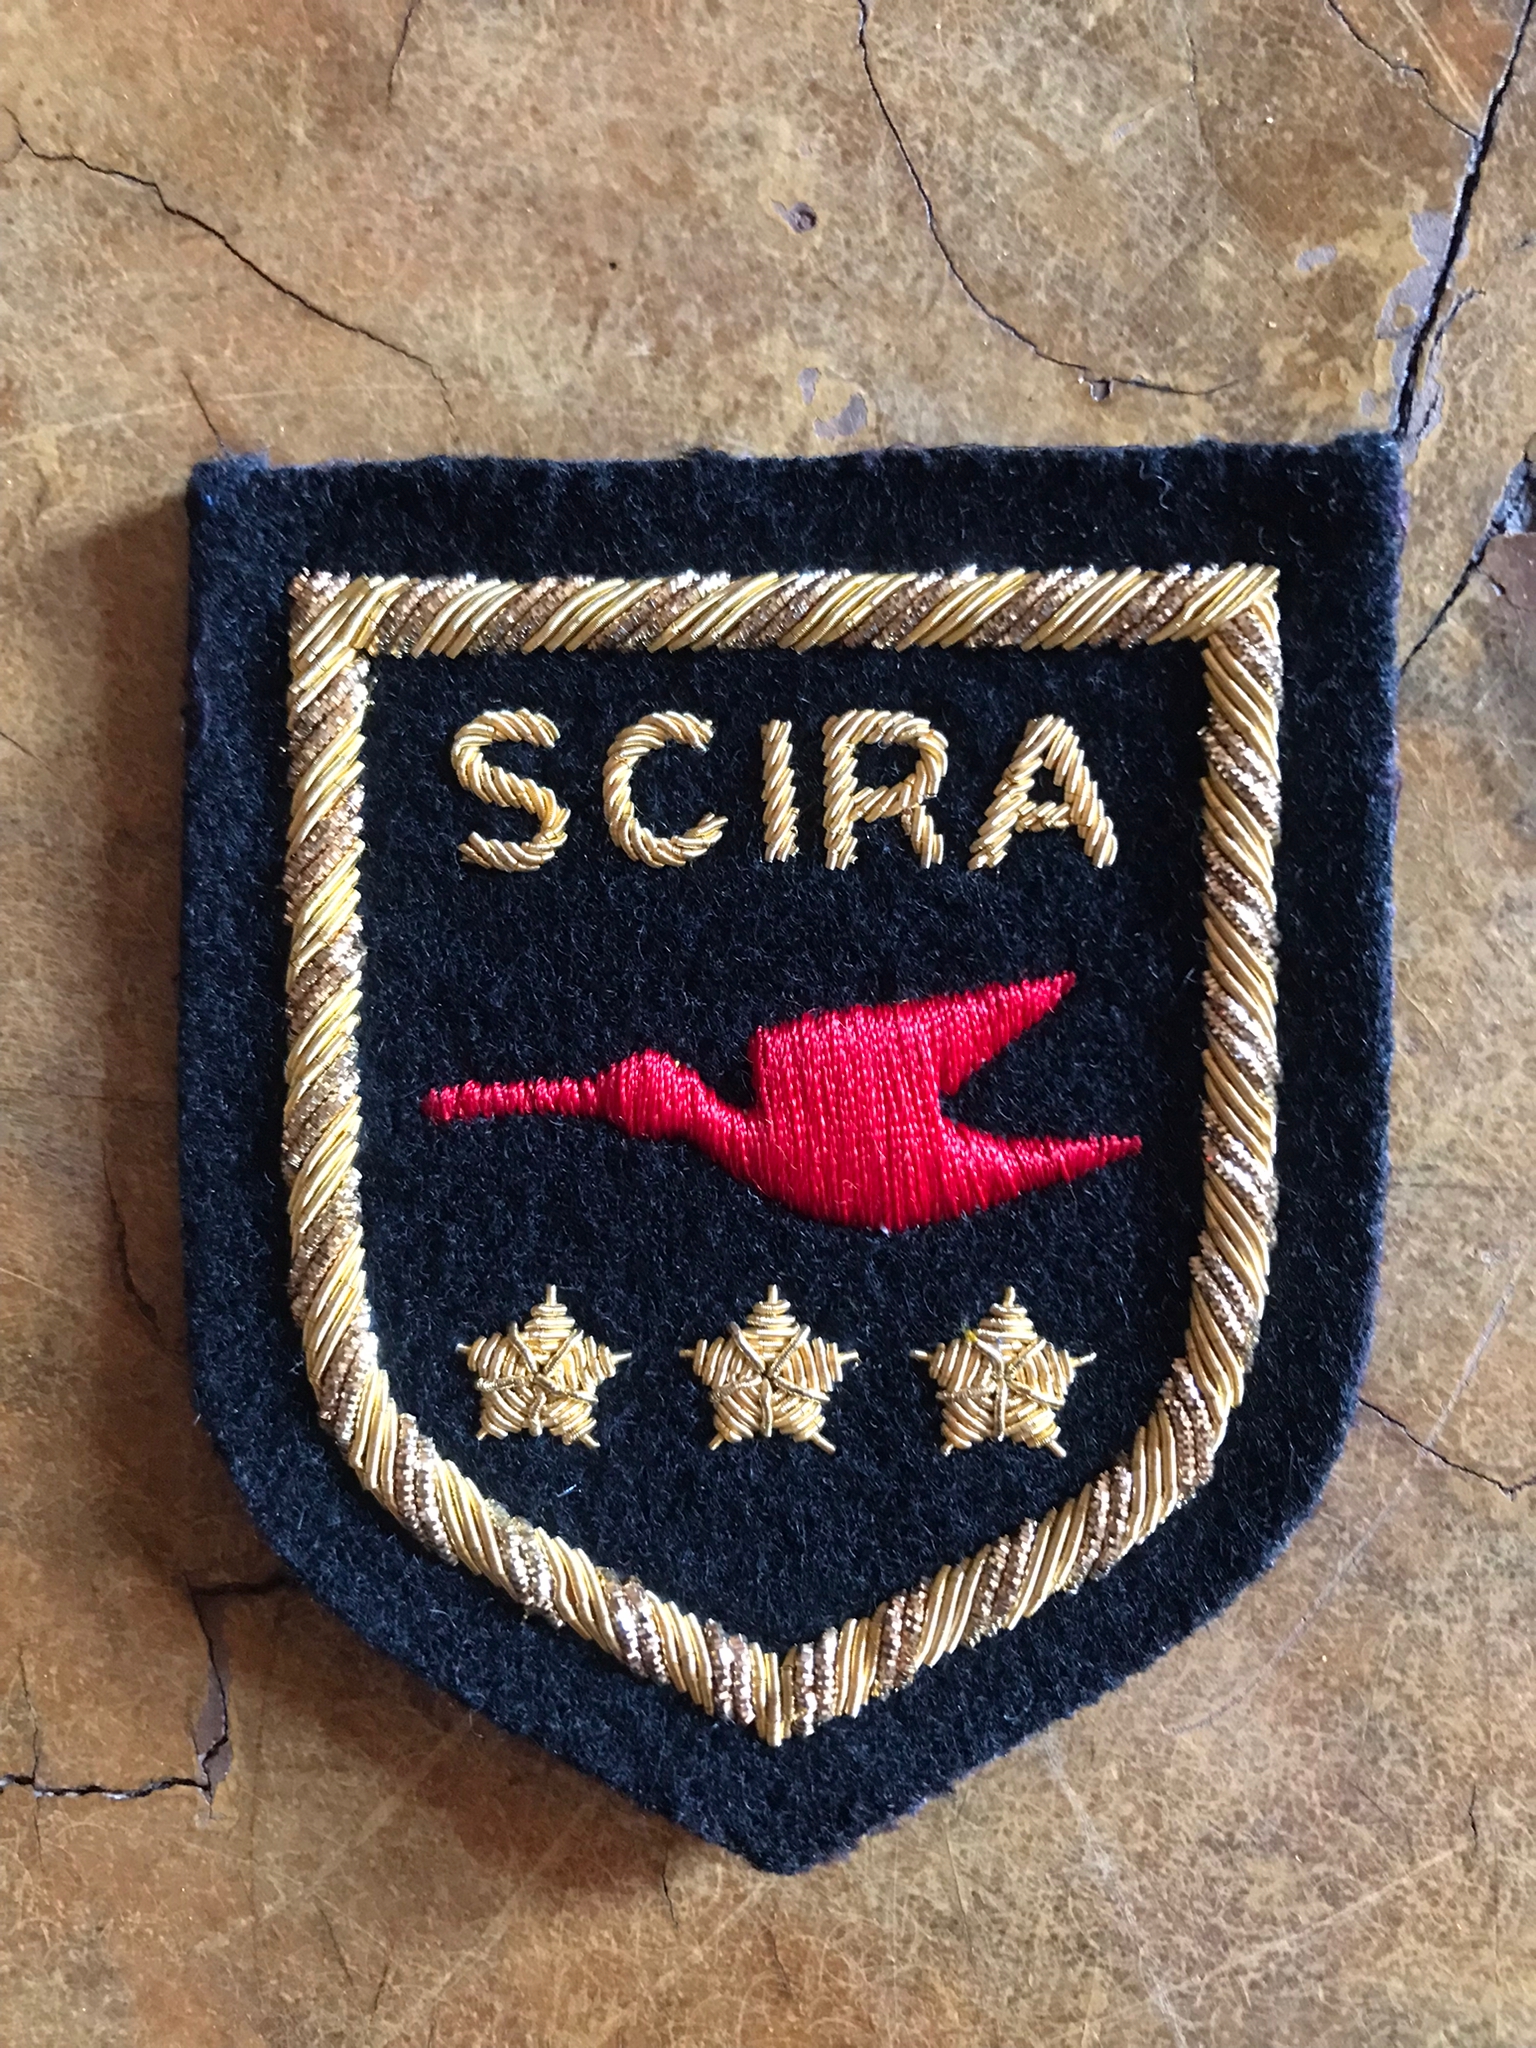 SCIRA Emblems and Insignias Image